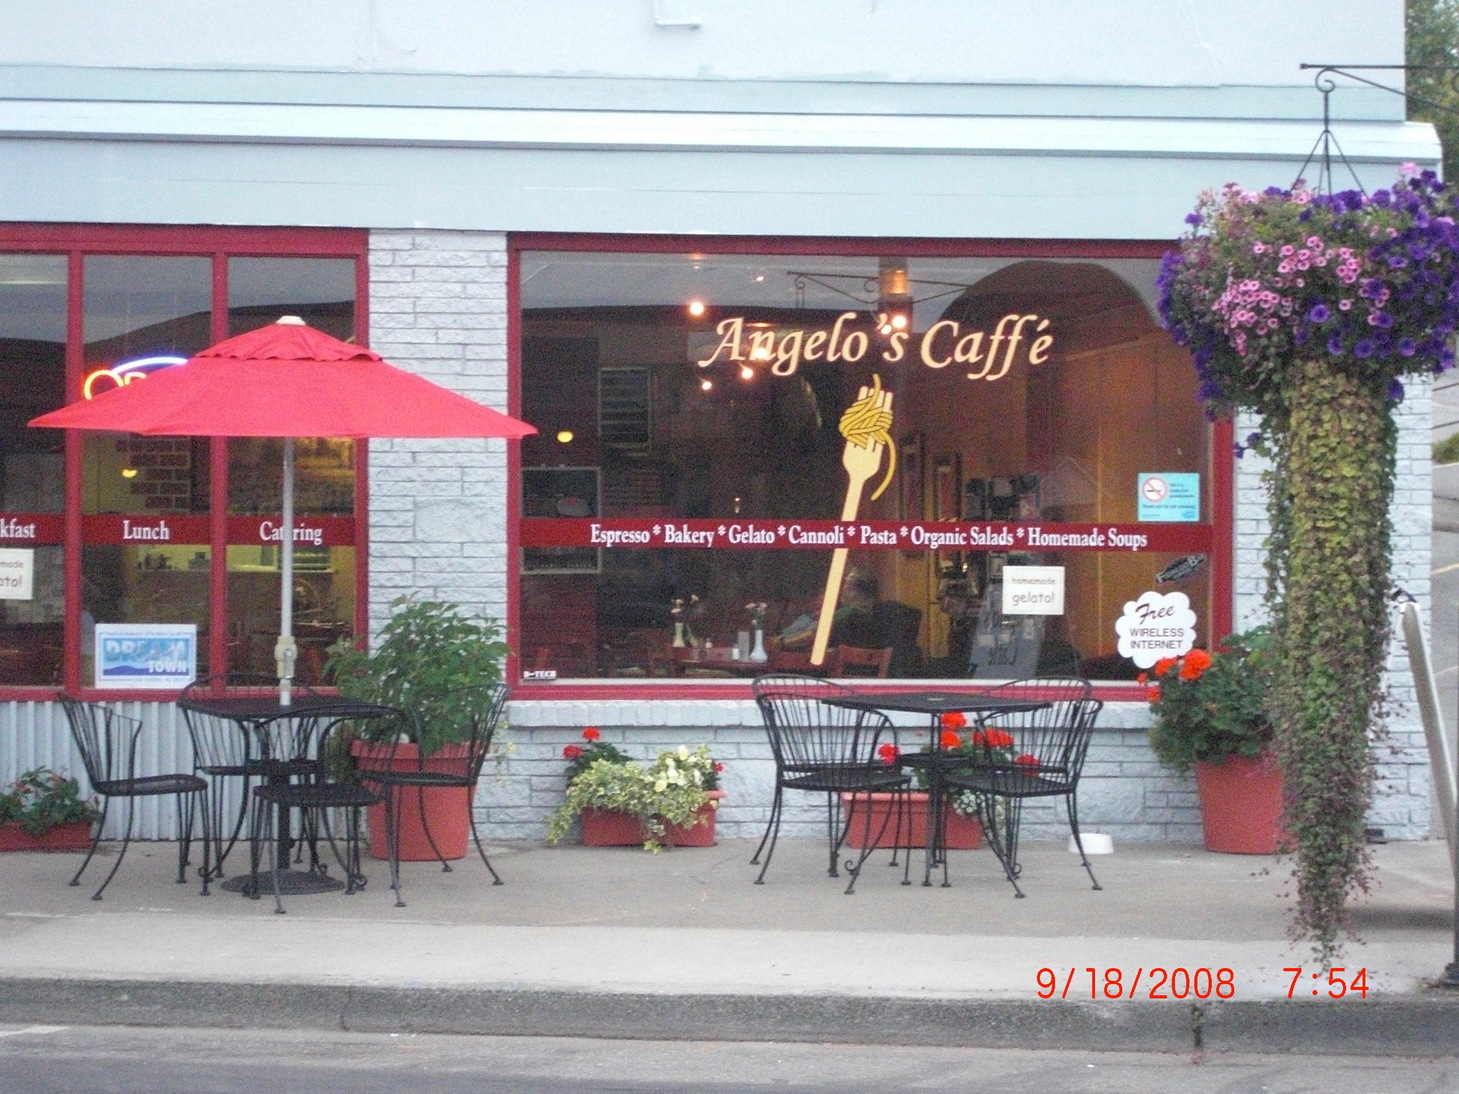 Oak Harbor, WA: Angelo's Caffe on Pioneer Way in Downtown Oak Harbor